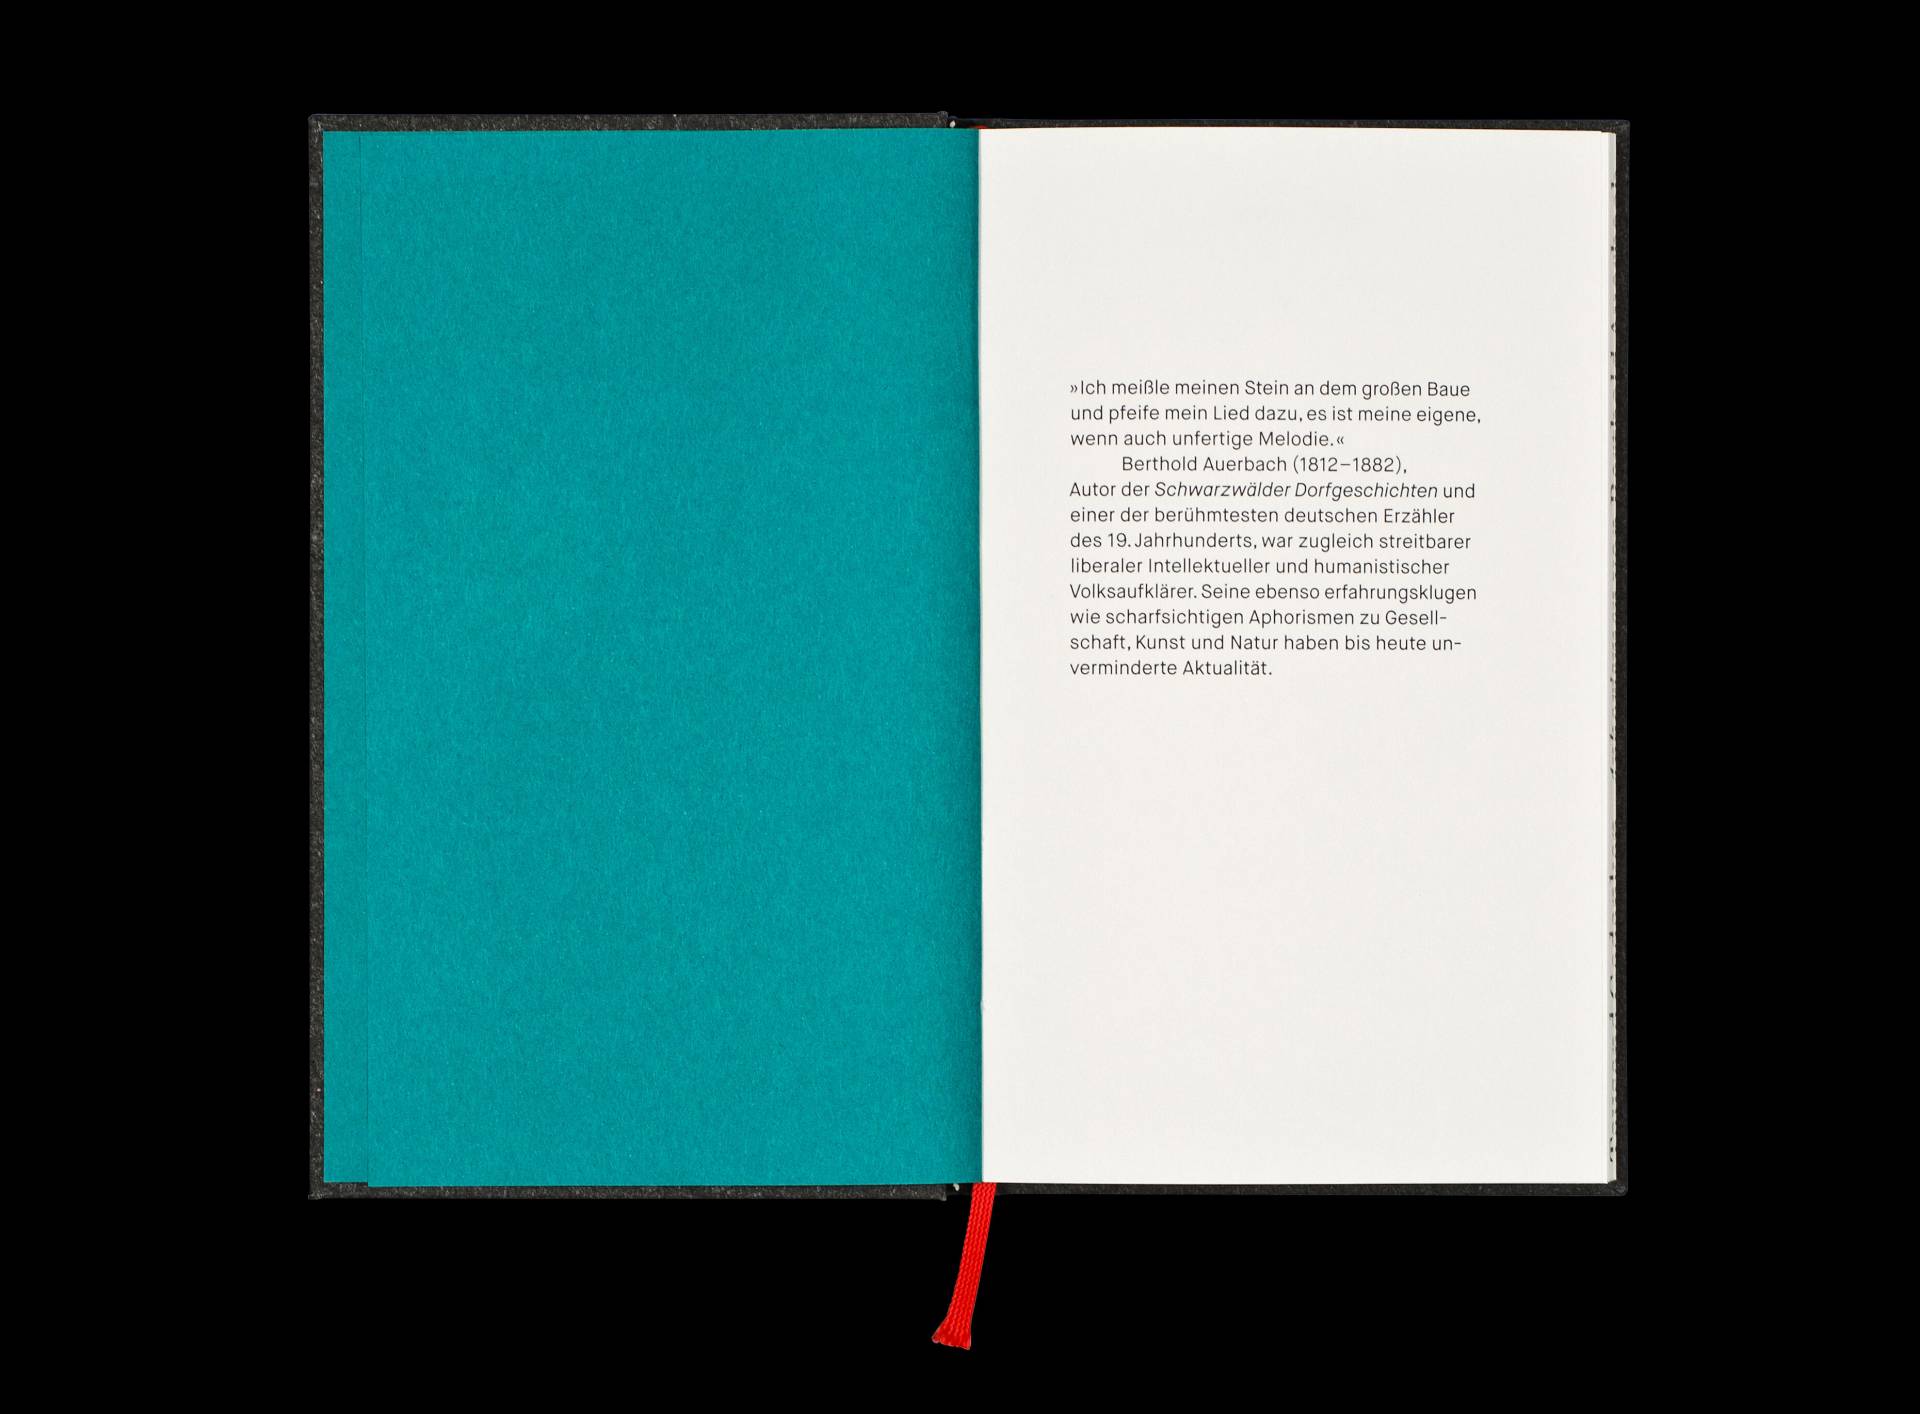 Publikation »Tausend Gedanken – Aphorismen von Berthold Auerbach« für die Edition Alea, Badenweiler